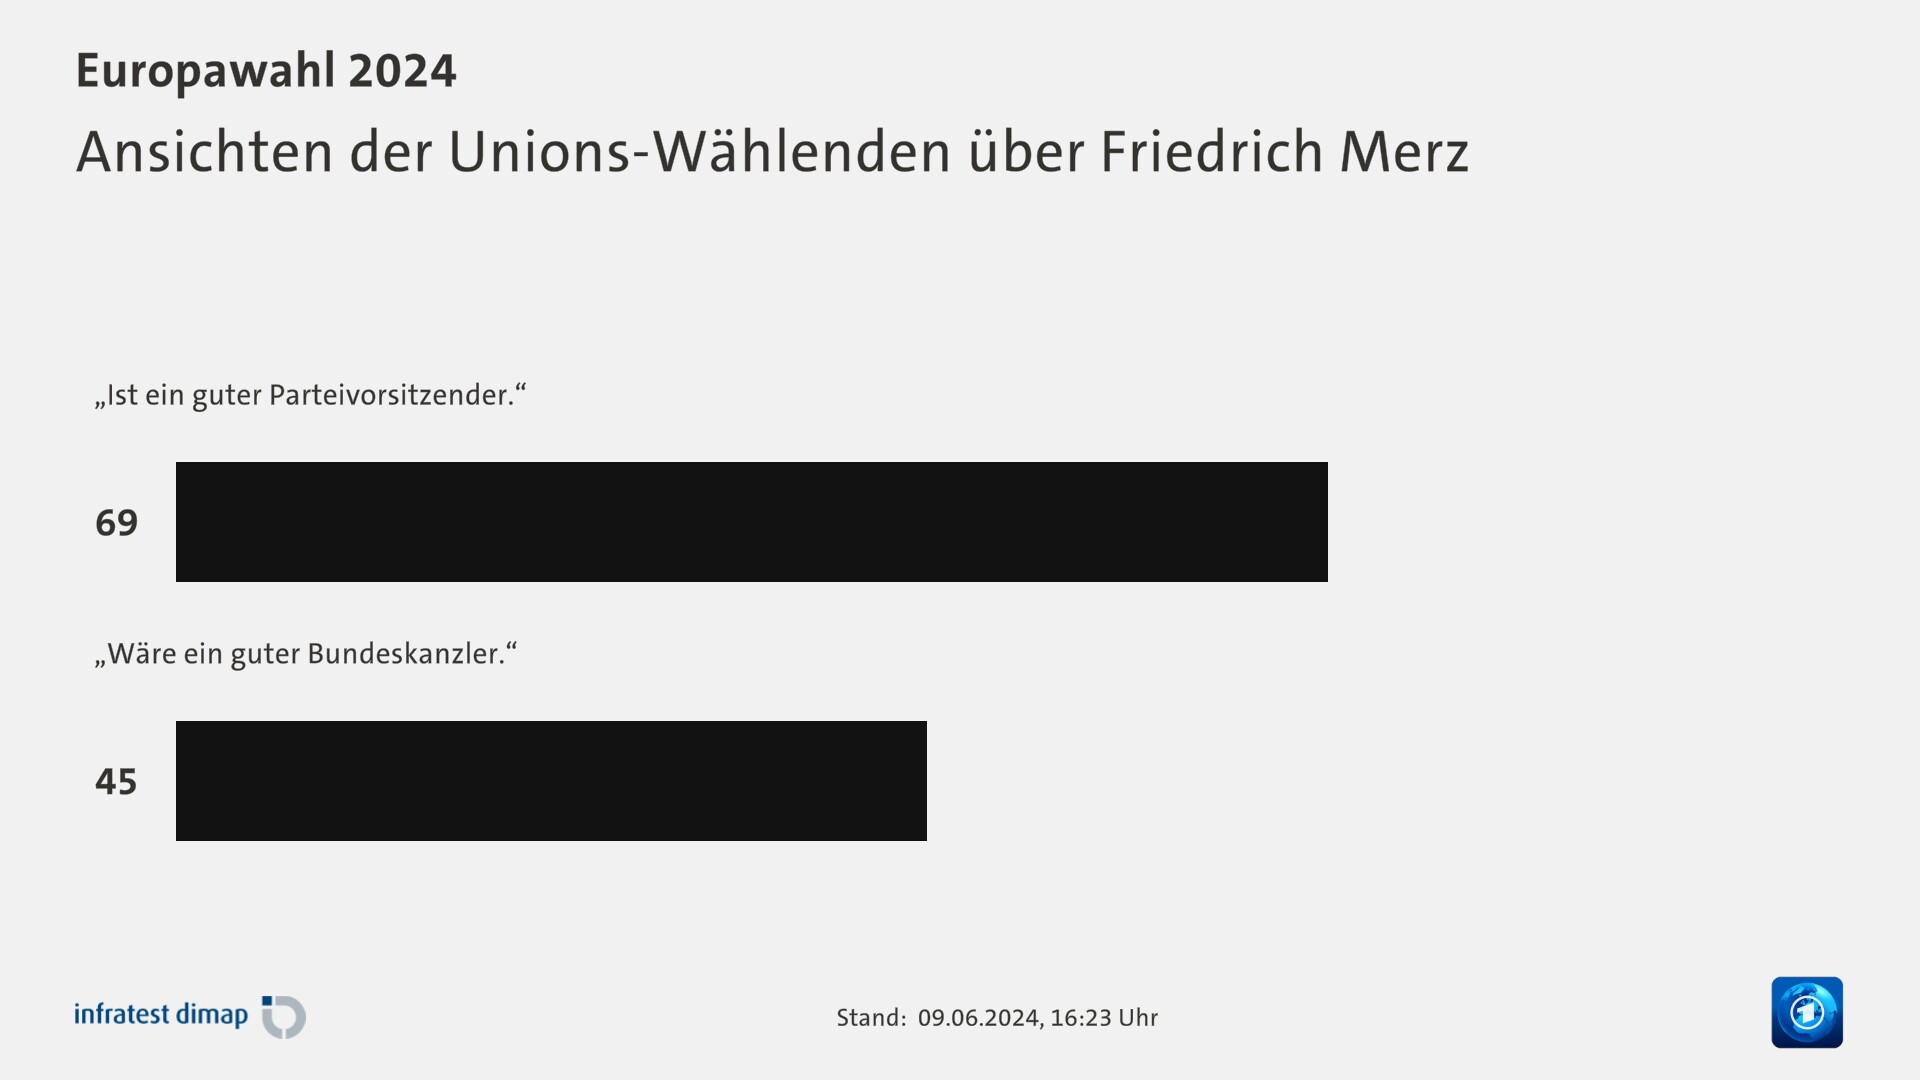 Ansichten der Unions-Wählenden über Friedrich Merz